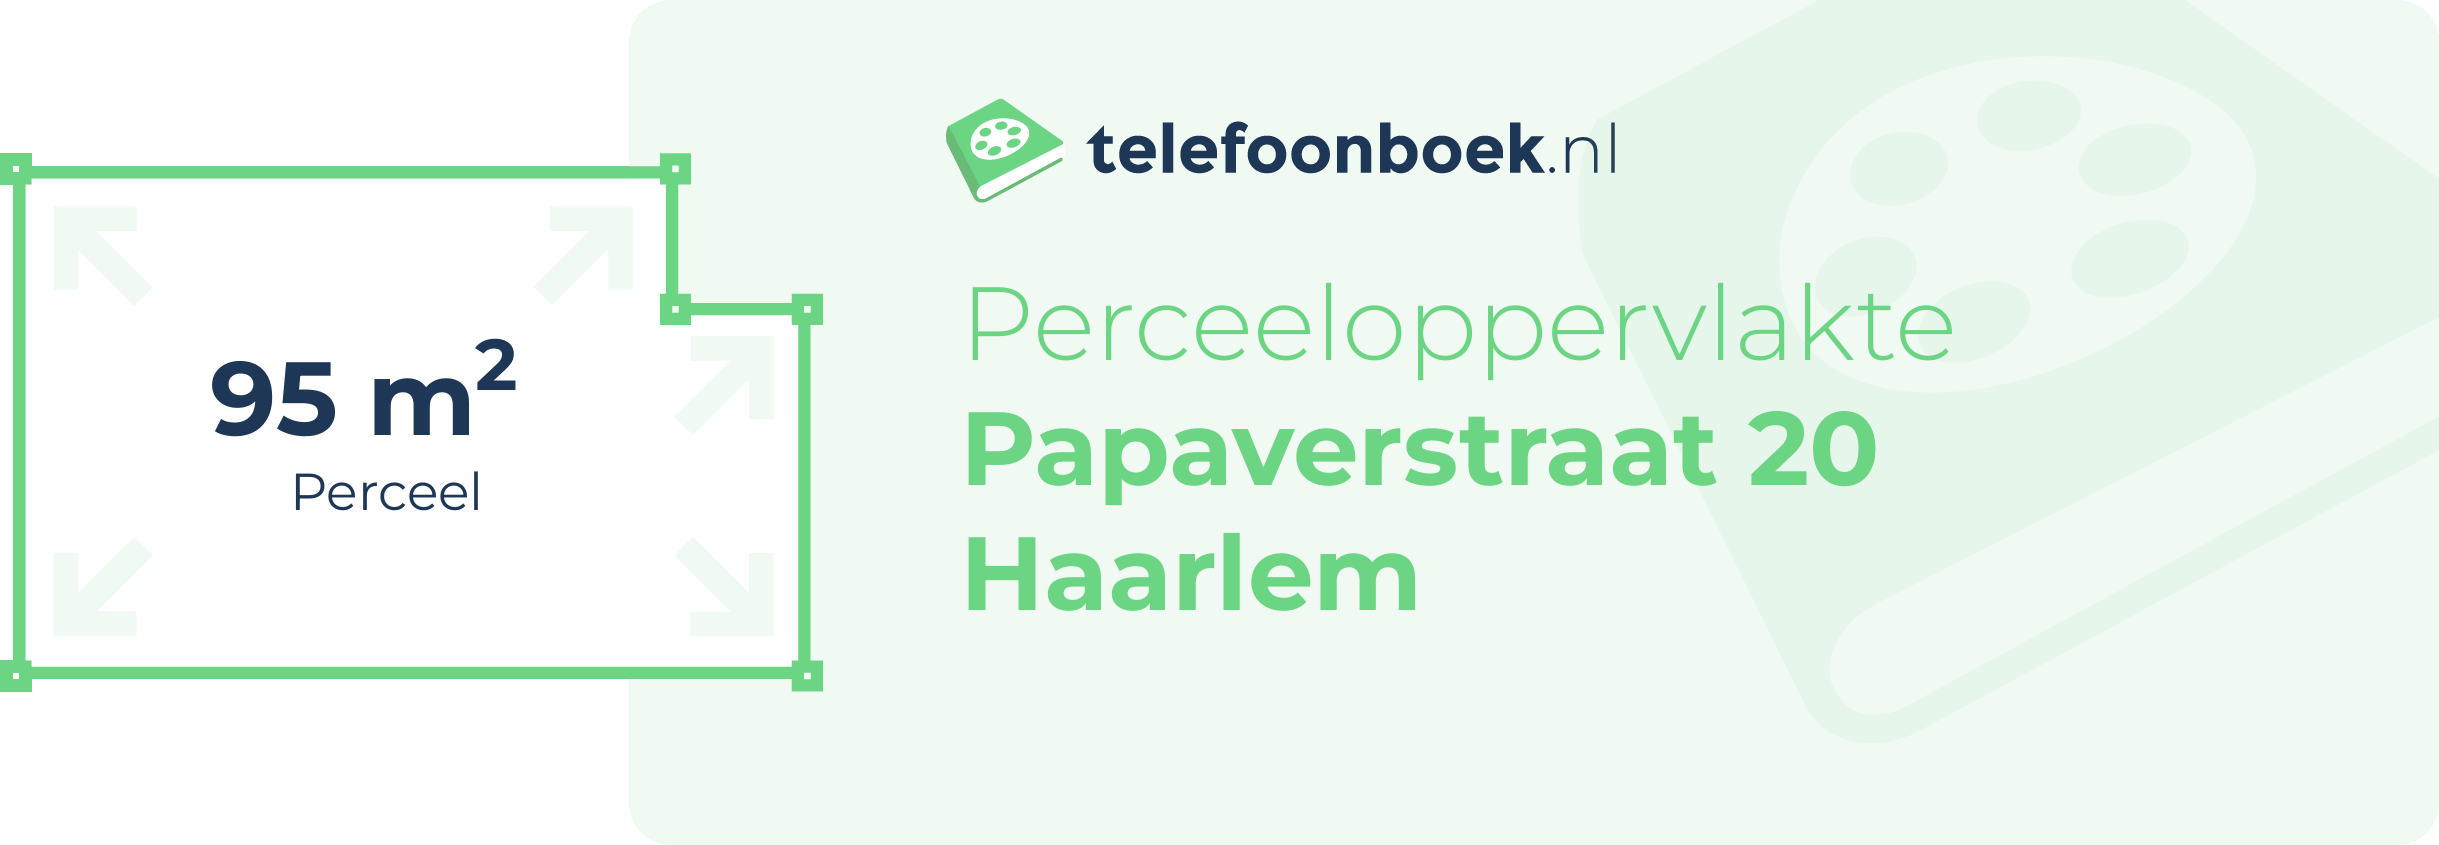 Perceeloppervlakte Papaverstraat 20 Haarlem